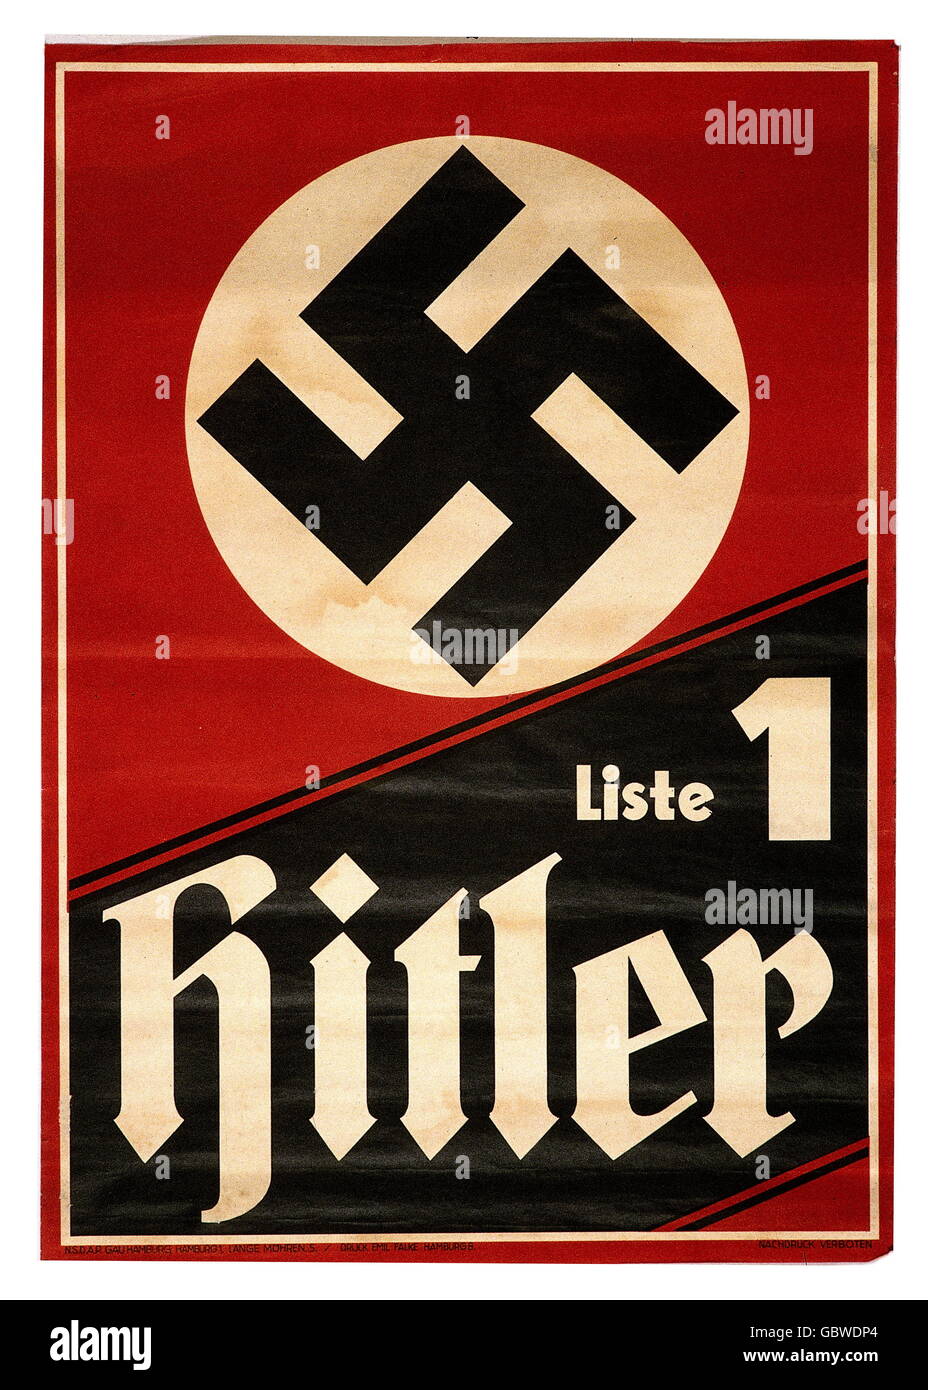 Géographie / voyage, Allemagne, politique, élection du Reichstag 6.11.1932, affiche électorale du NSDAP, 'liste 1 - Hitler', droits additionnels-Clearences-non disponible Banque D'Images